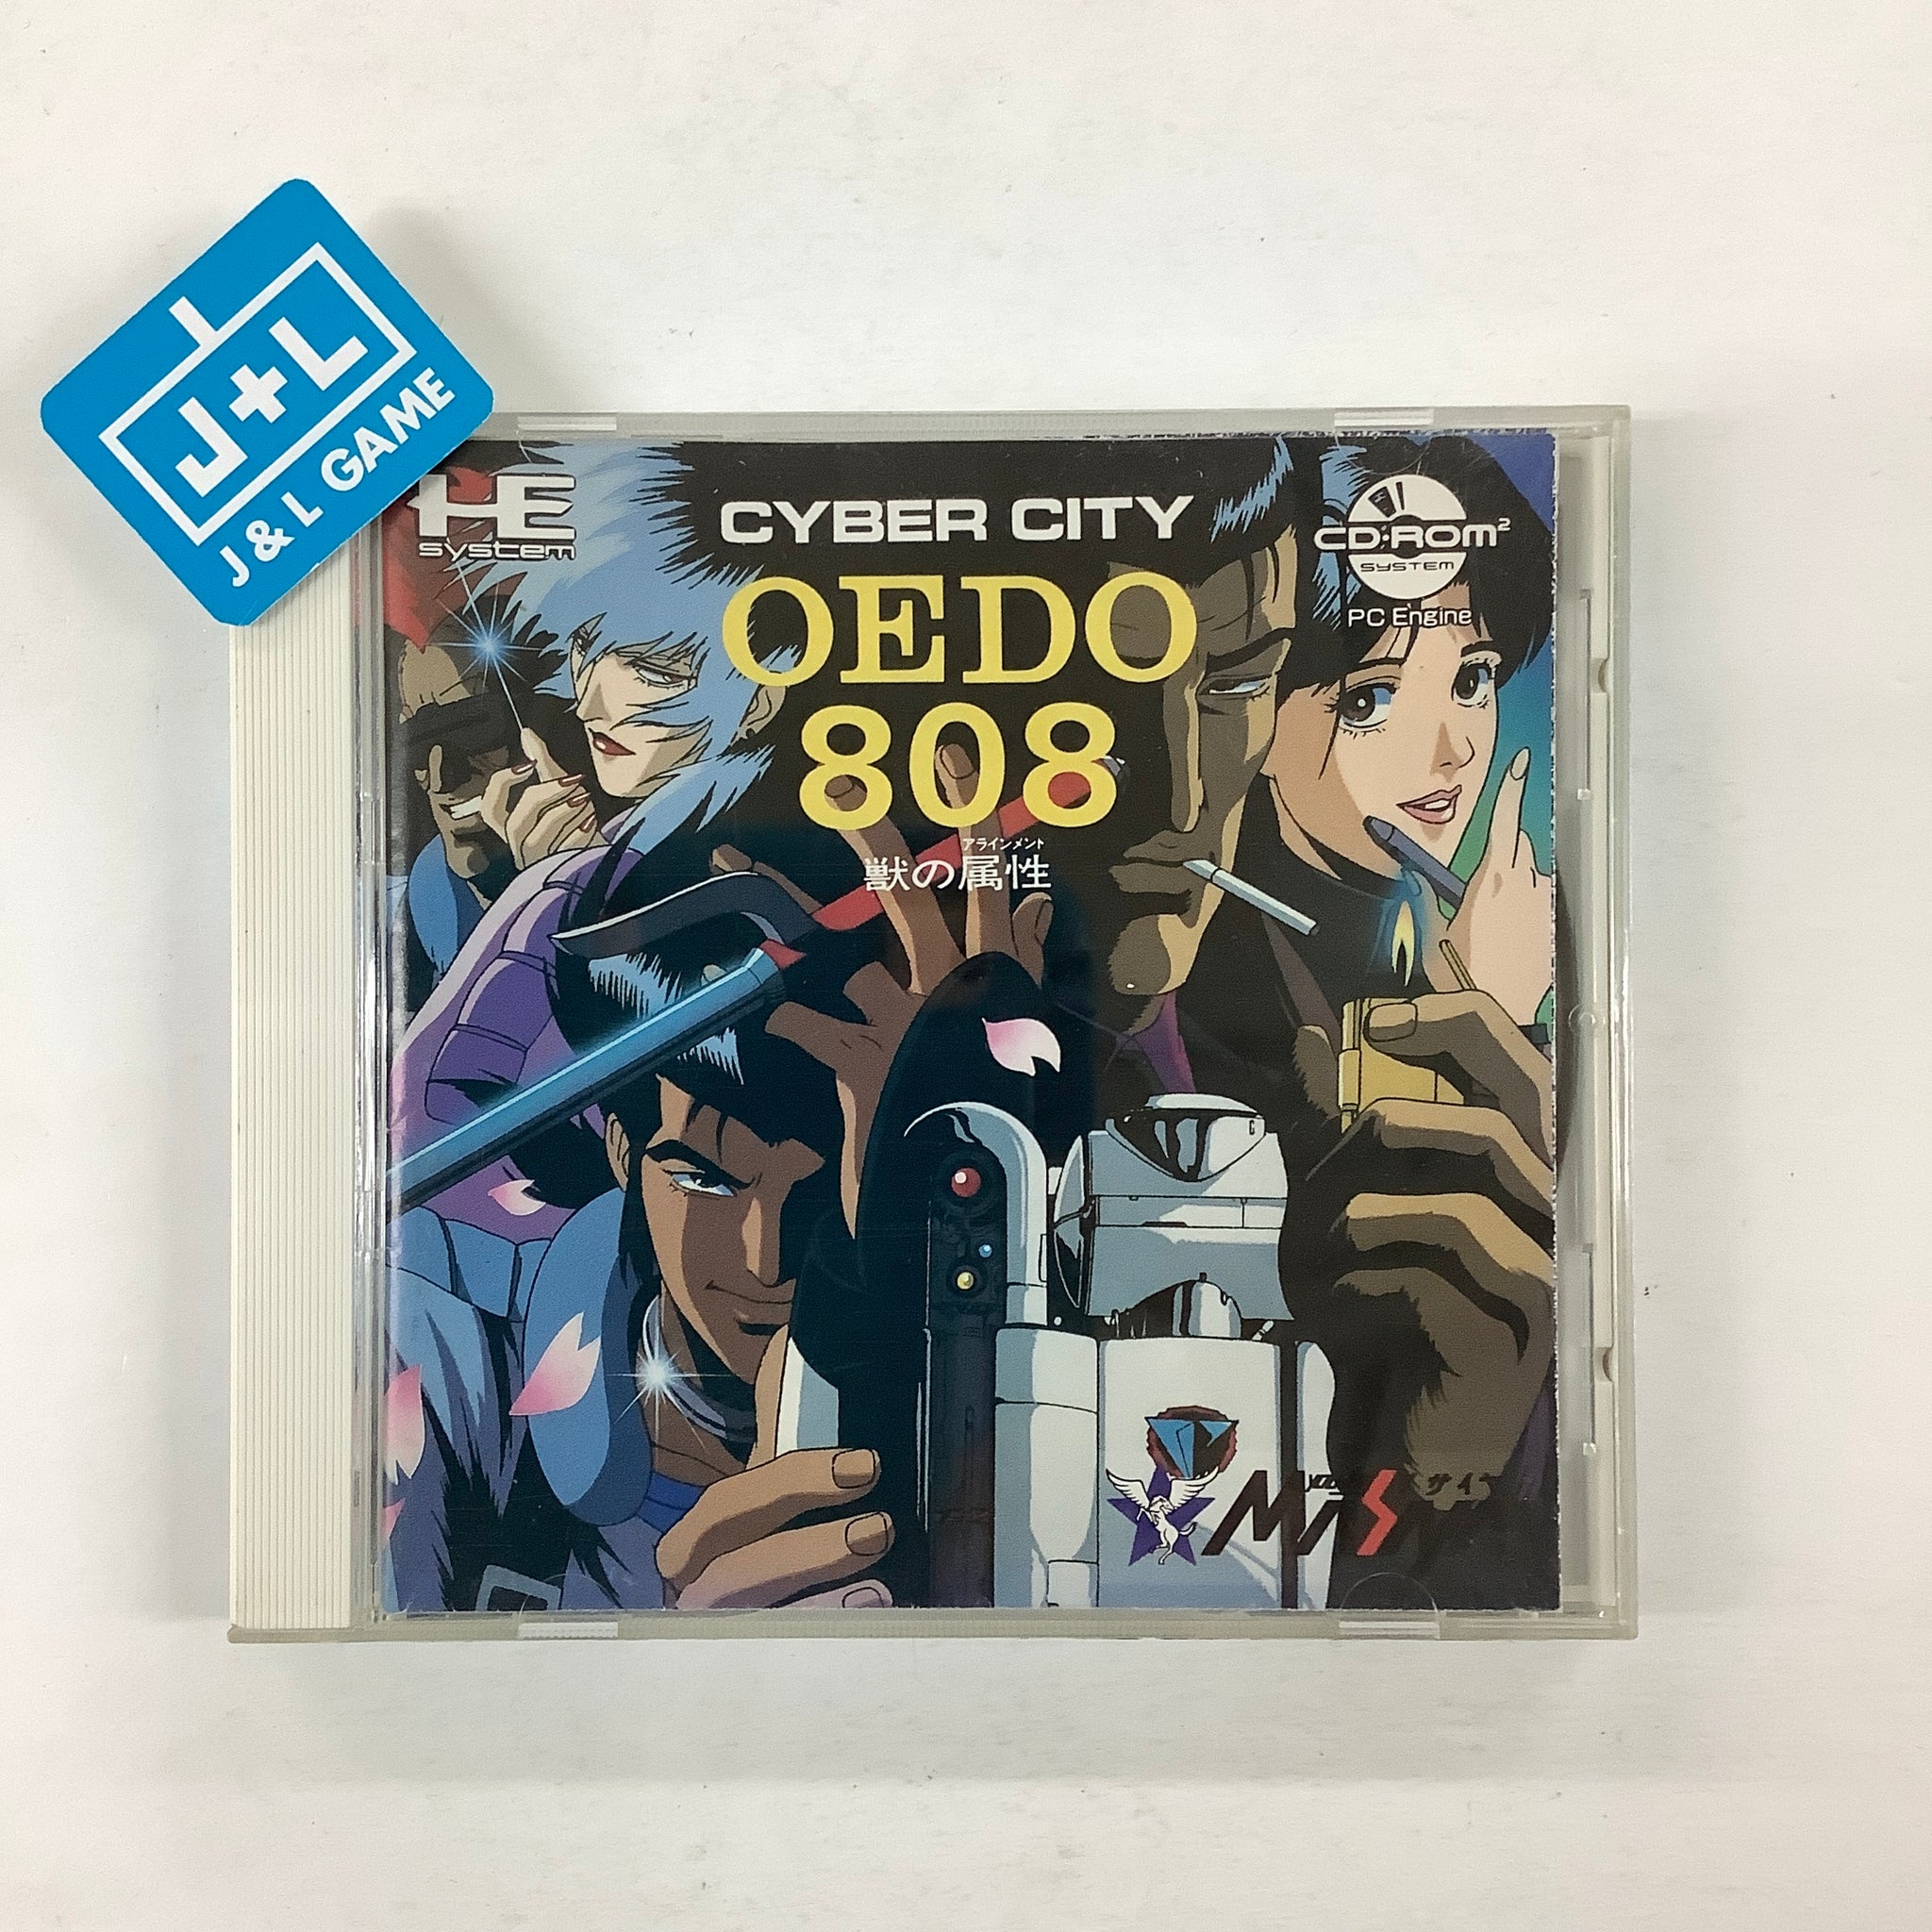 CYBER CITY OEDO808 サウンドトラック-